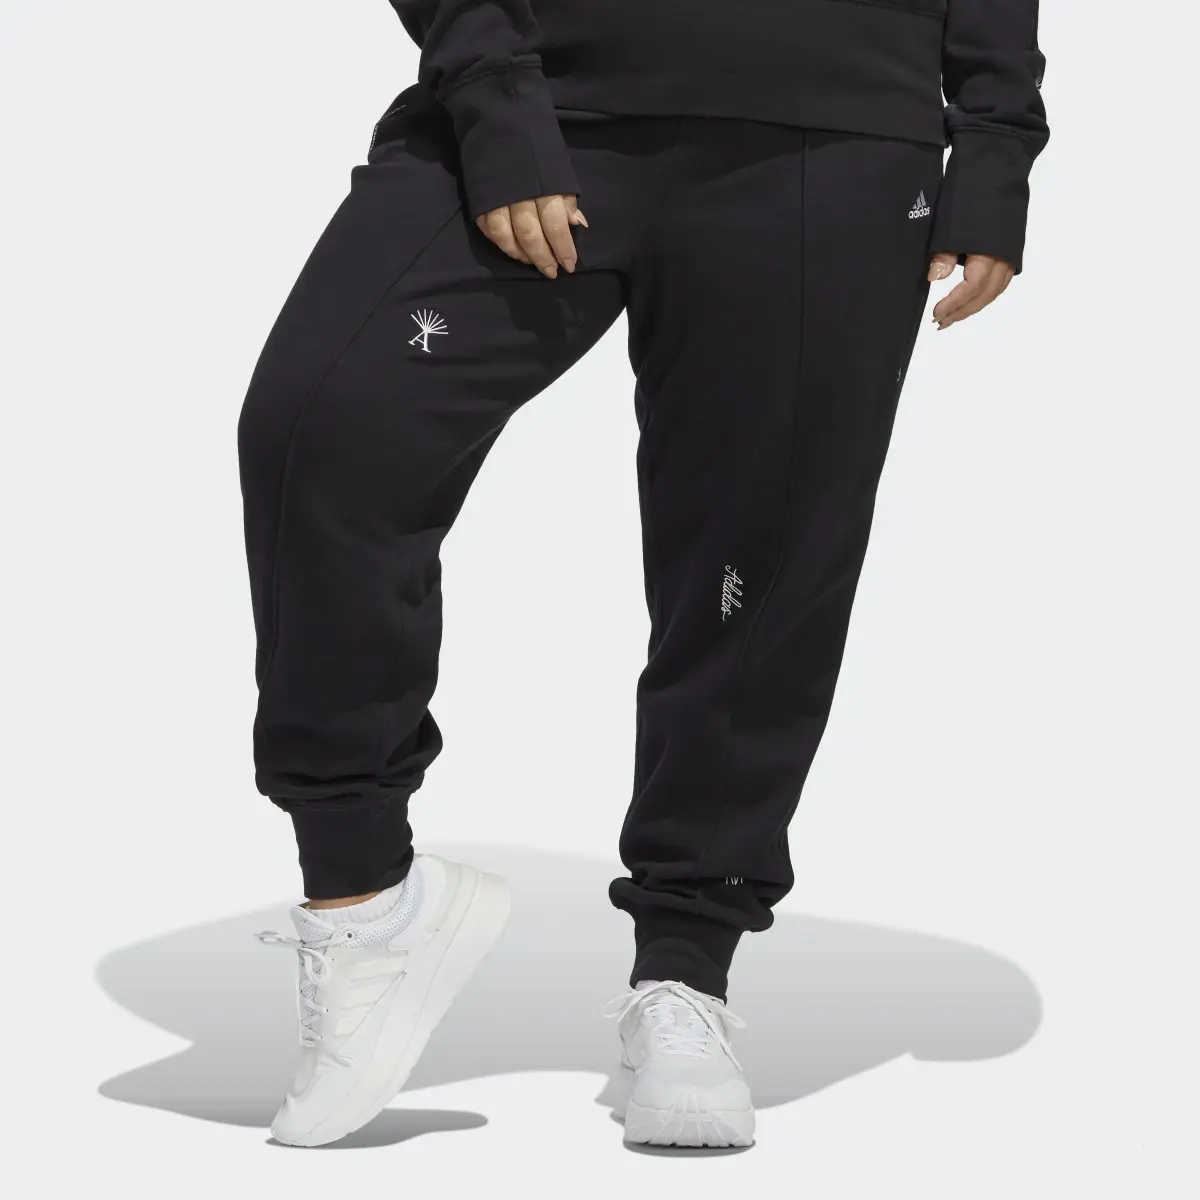 Adidas Pantalon sportswear avec graphismes inspirés de la lithothérapie (Grandes tailles). 1